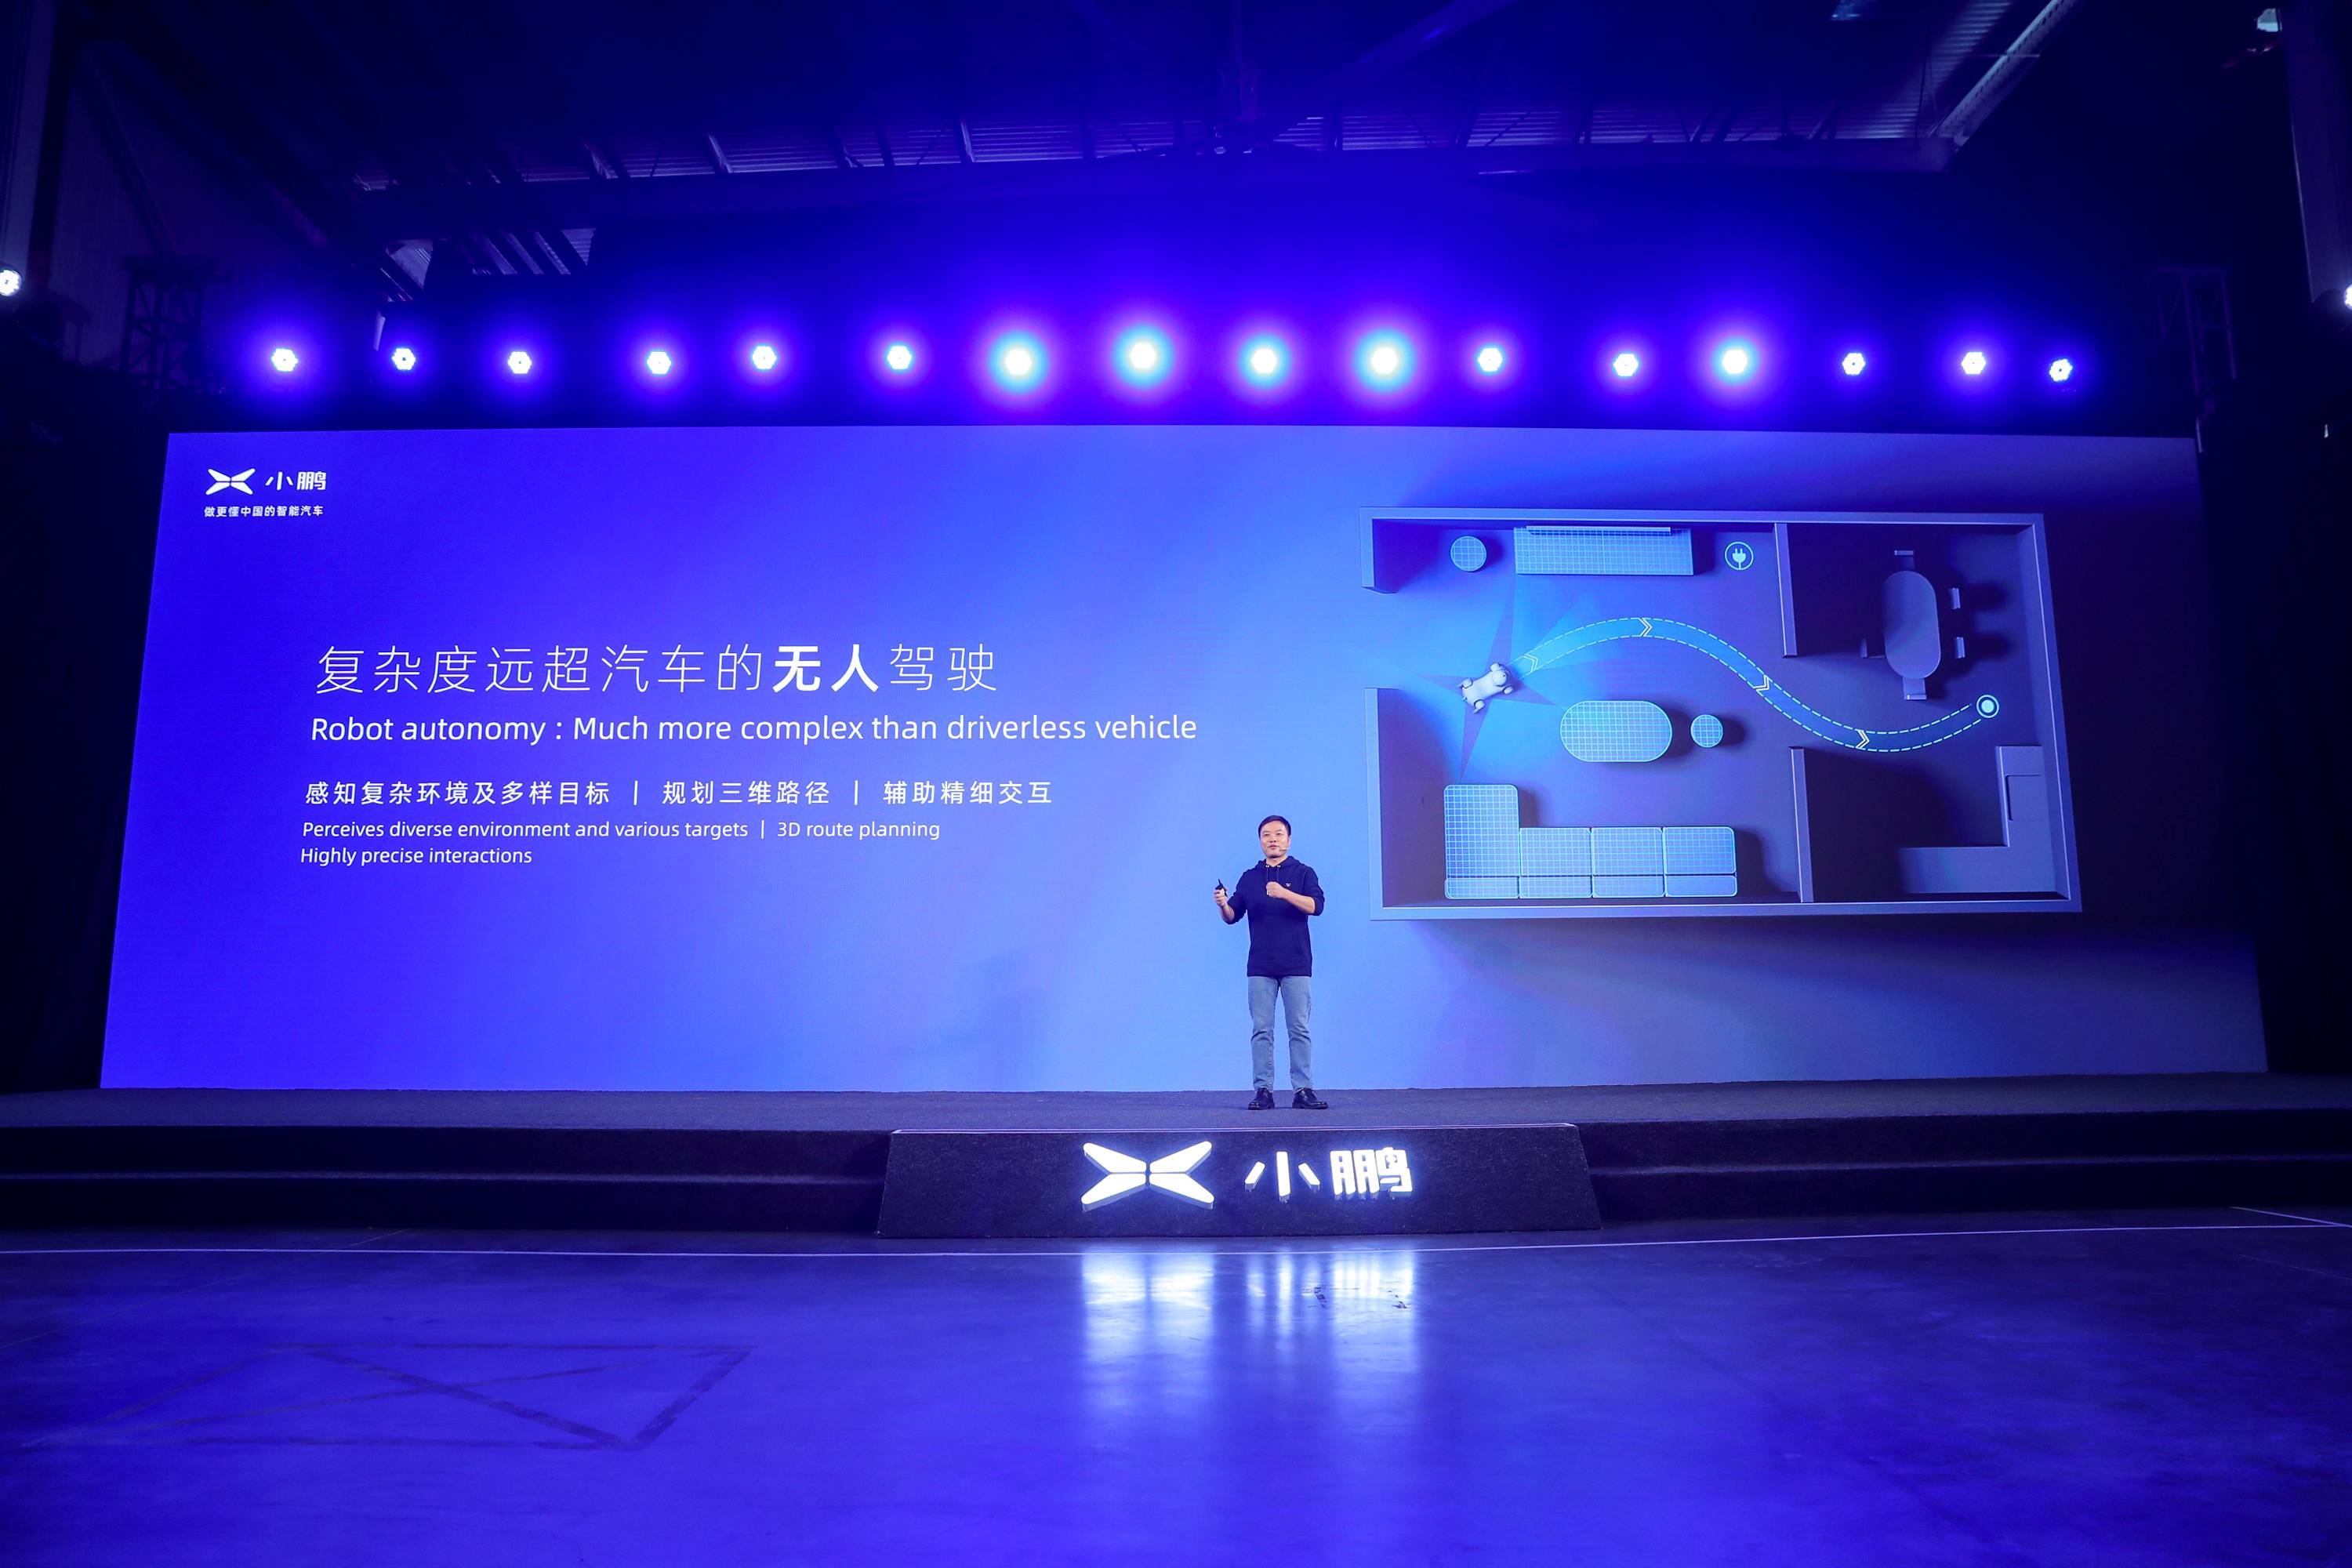 12 3 - Xiaopeng Automobile Technology Day: oltre alla “Super Recharge” che percorre 200 chilometri in 5 minuti, c’è anche questa macchina volante da un milione di livelli